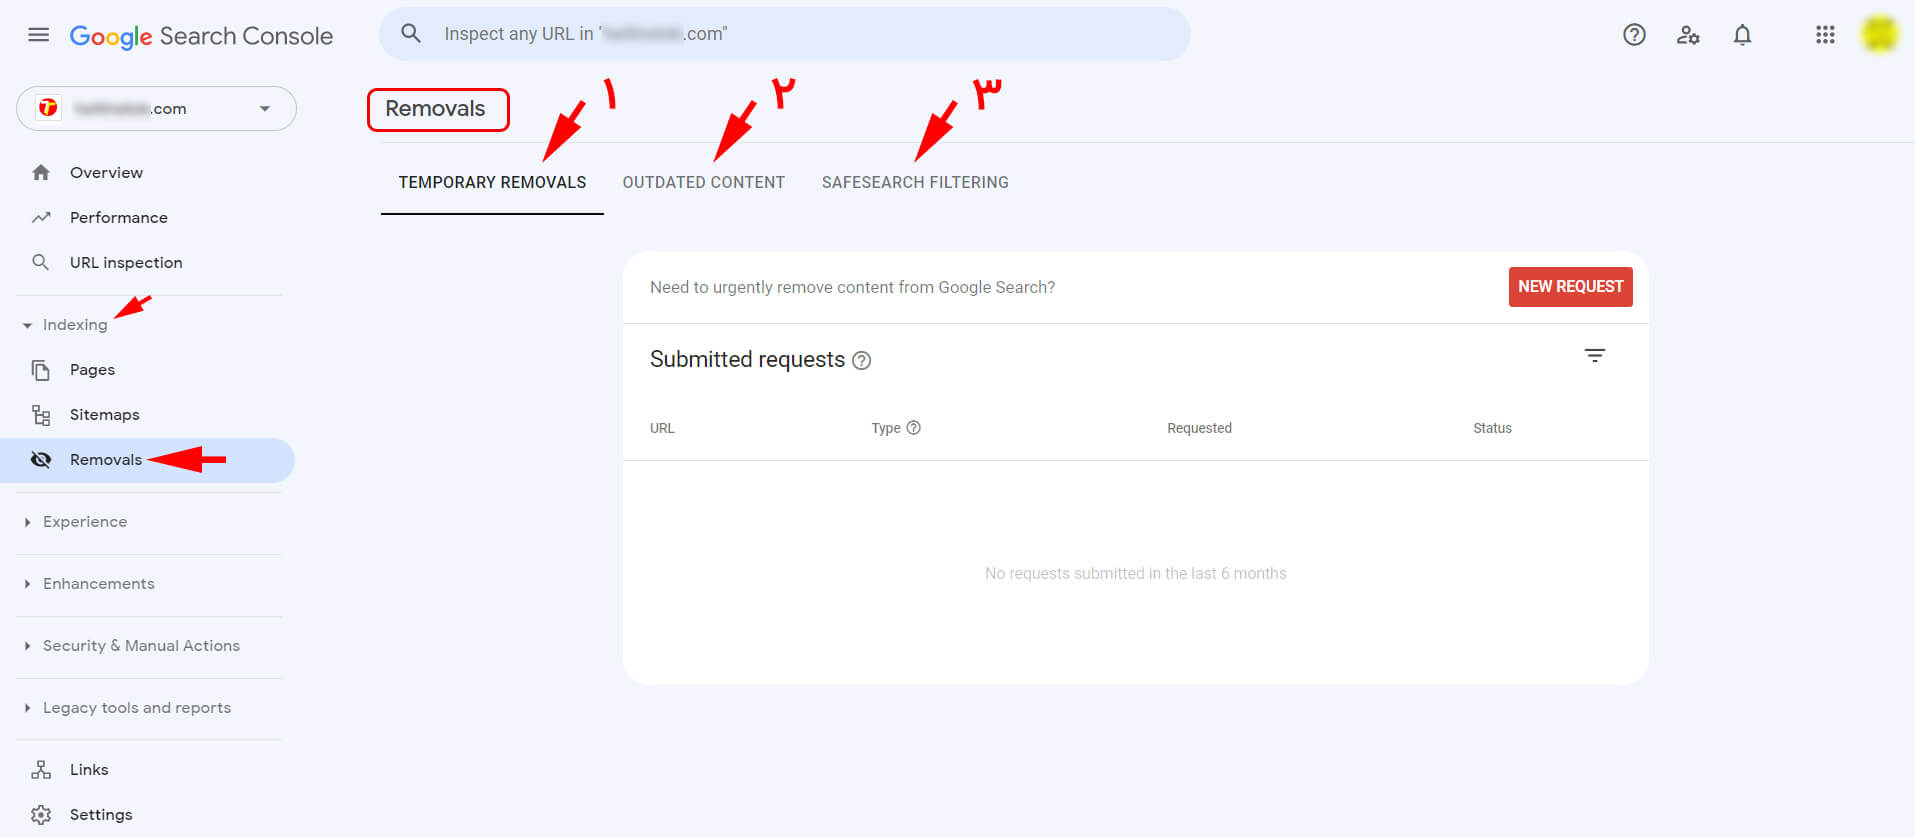 سه زبانه مهم در بخش Removals در داشبورد گوگل سرچ کنسول